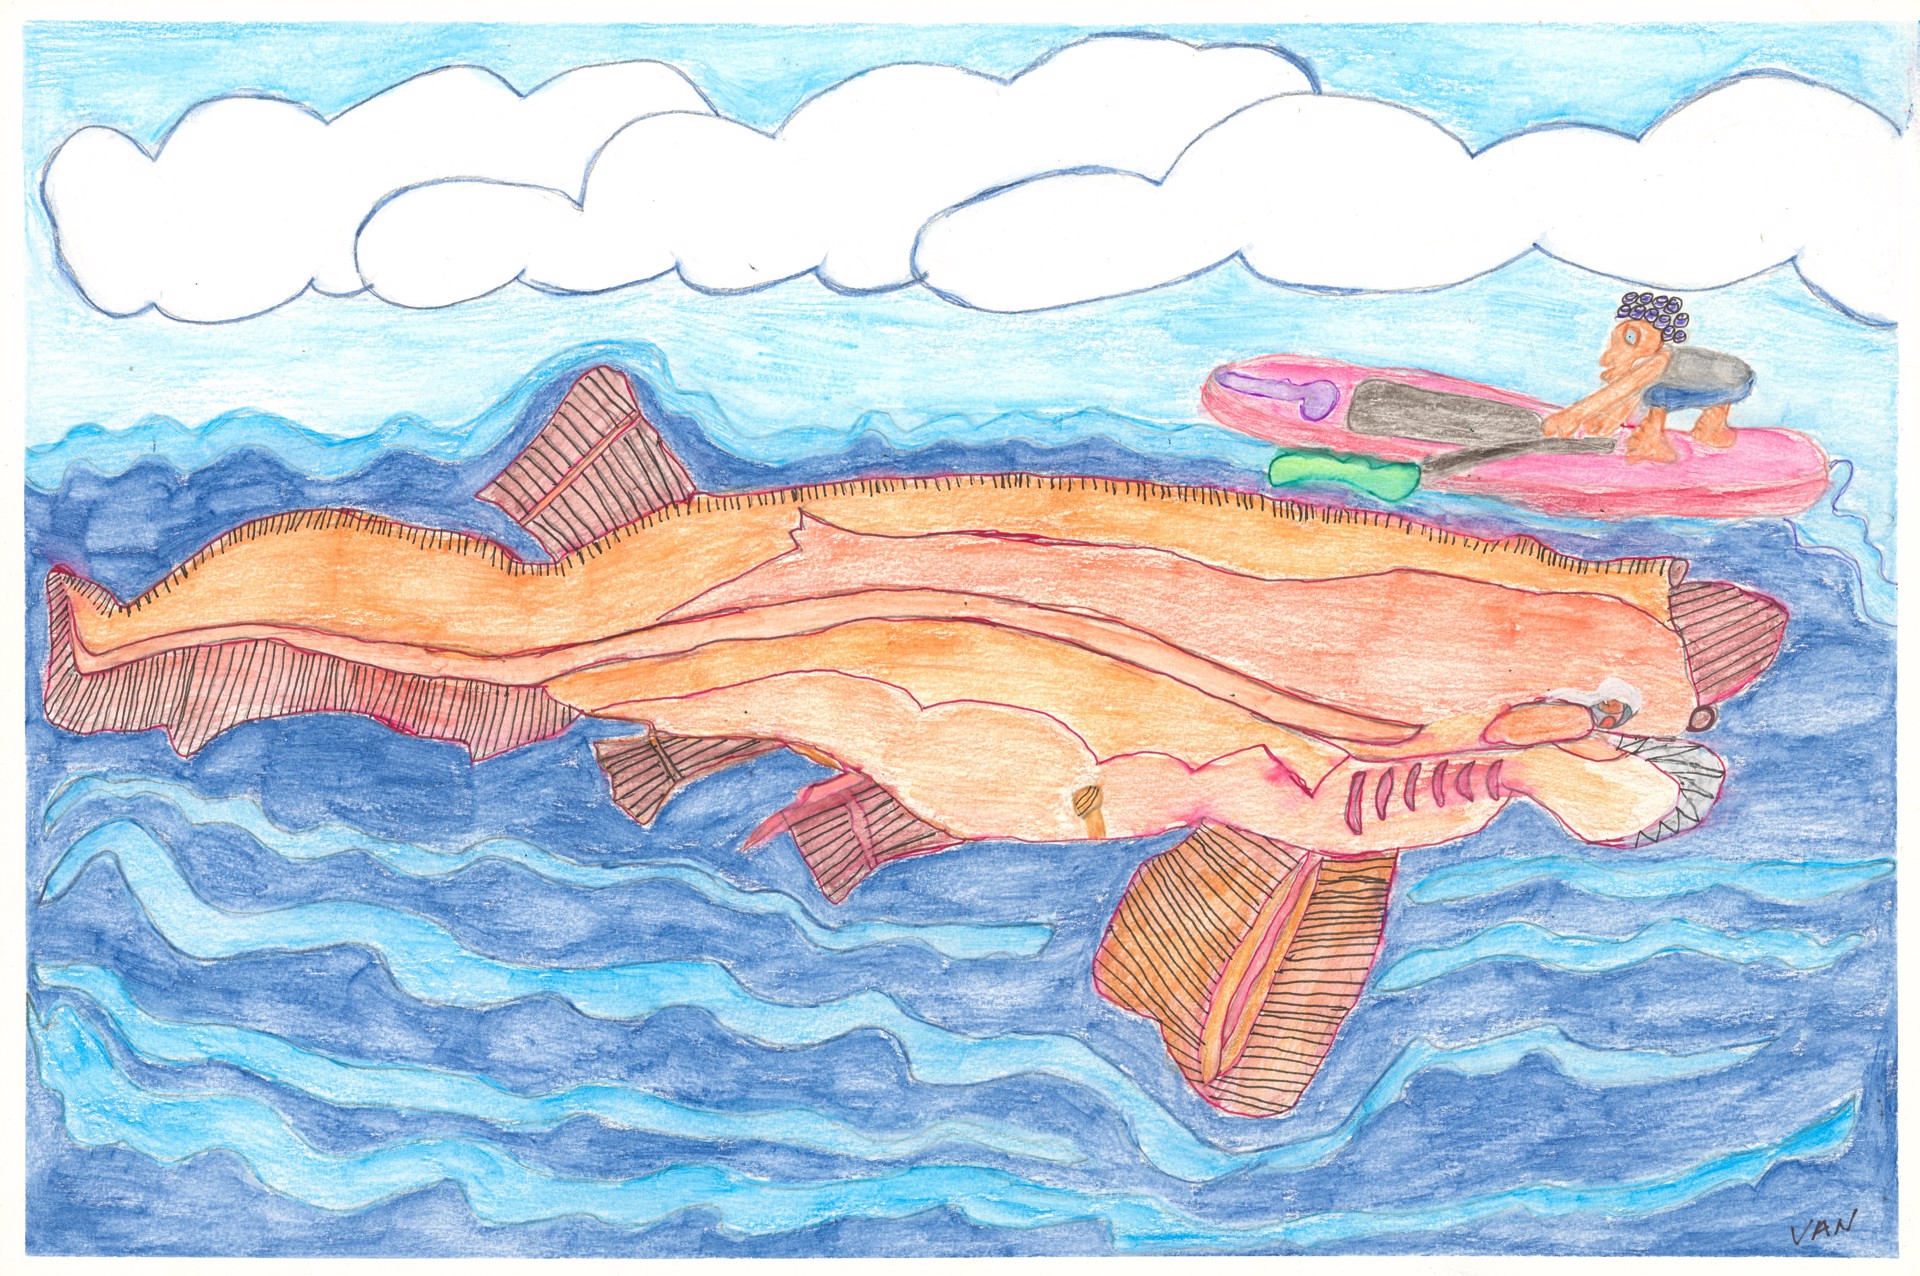 Bluntnose Sixgill Shark by Vanessa Monroe